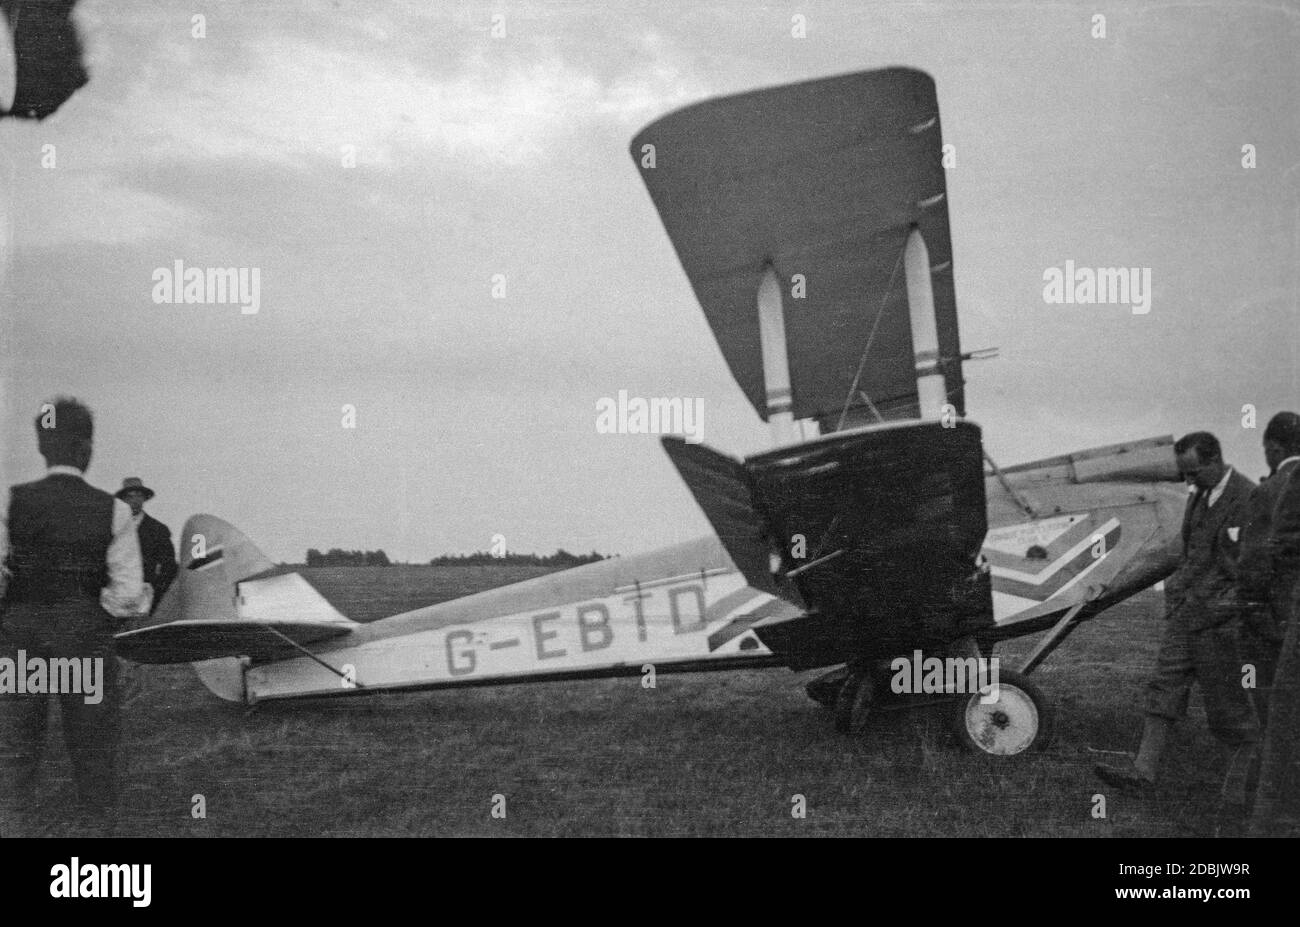 Un velivolo De Havilland DH 60X Moth, registrazione G-EBTD, in un campo aereo in Inghilterra nel 1937 dopo un guasto al carro. Alcuni uomini che guardano intorno al velivolo. Foto Stock